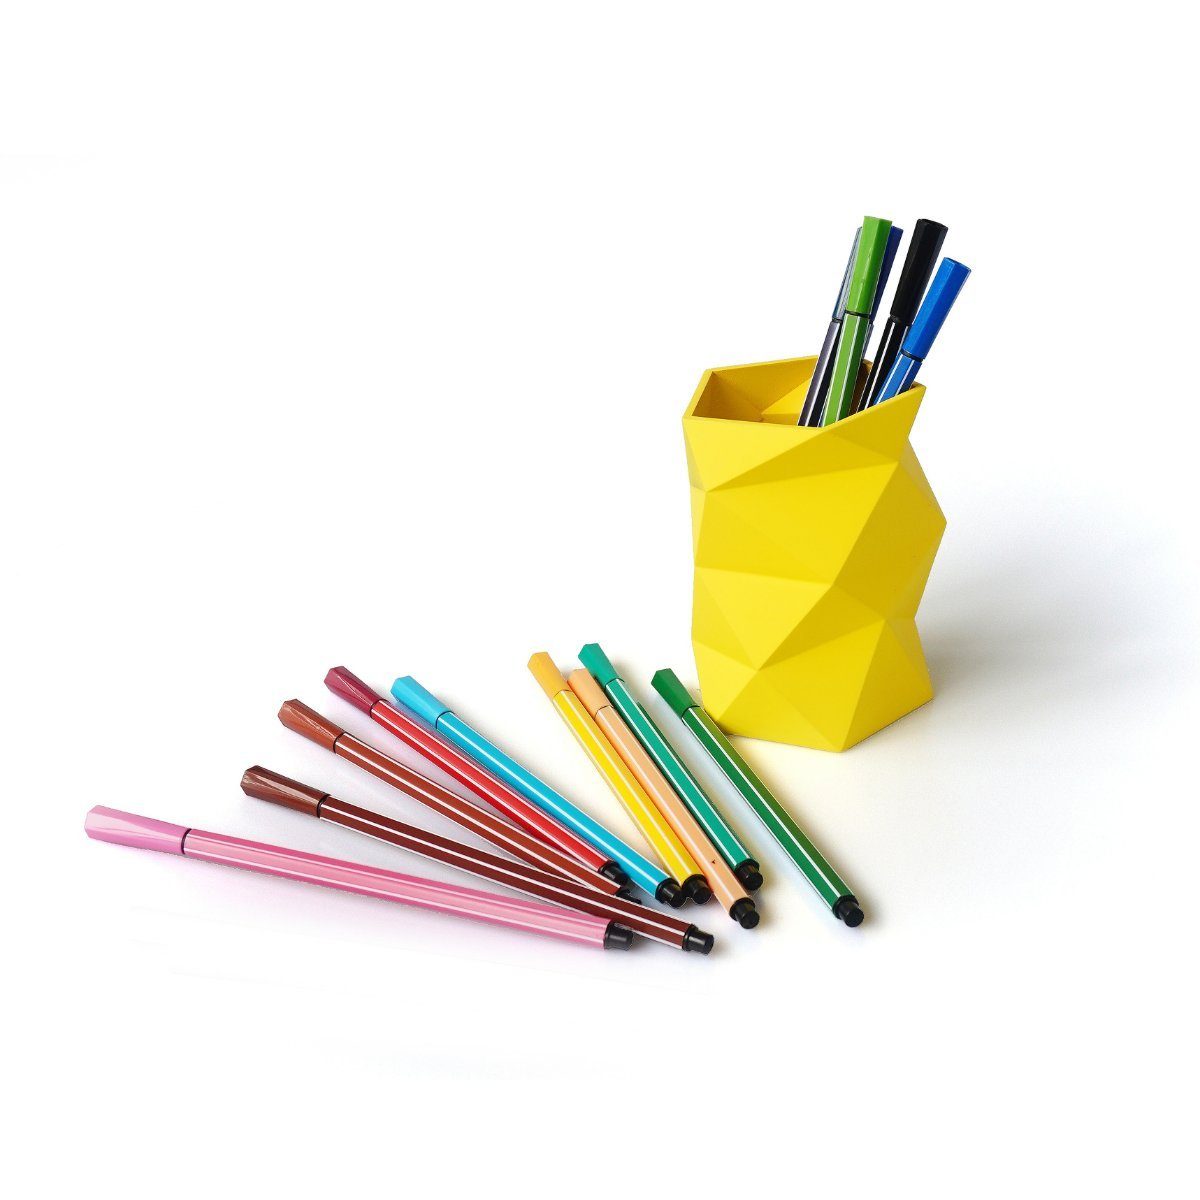 HermesDeals FACES Schreibtischaufsatz Gelb Silikon-Stifthalter